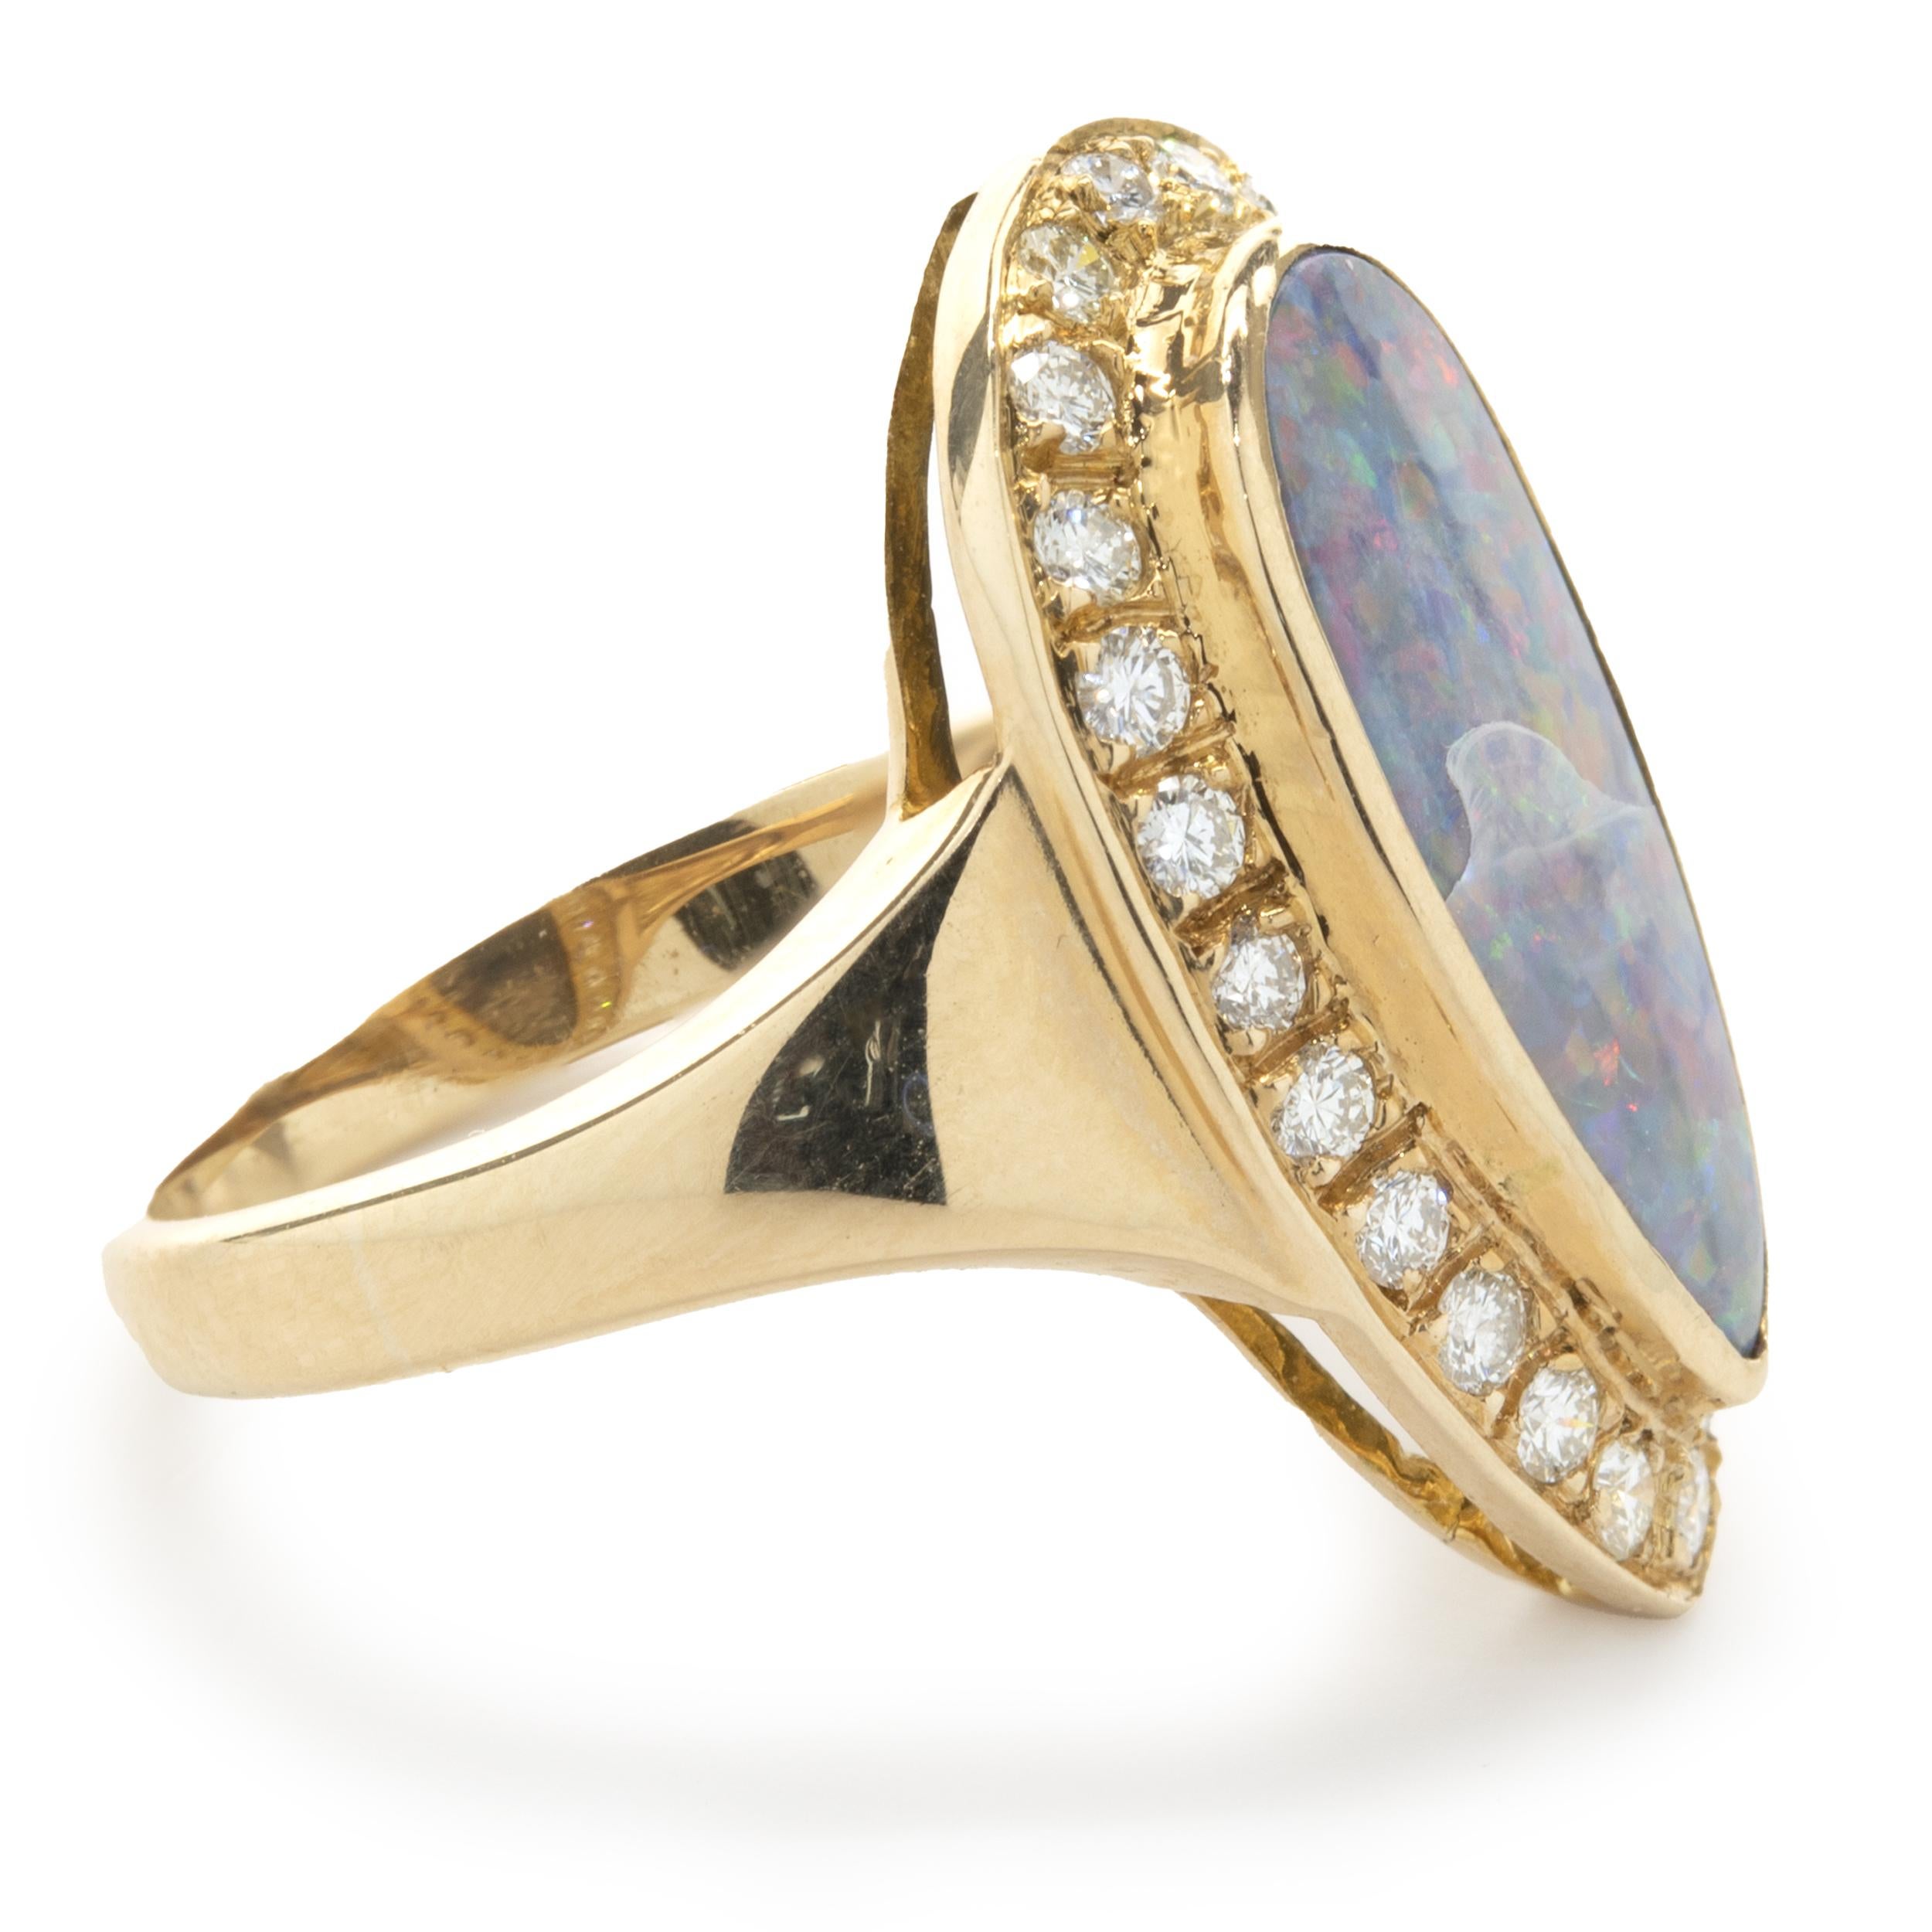 Designer : custom
Matériau : or jaune 14K
Diamant : 24 diamants ronds taille brillant = 0,48cttw
Couleur : H
Clarté : SI1
Dimensions : l'anneau supérieur mesure 21 mm de long
Taille de la bague : 5 (taille complémentaire disponible)
Poids : 3,57